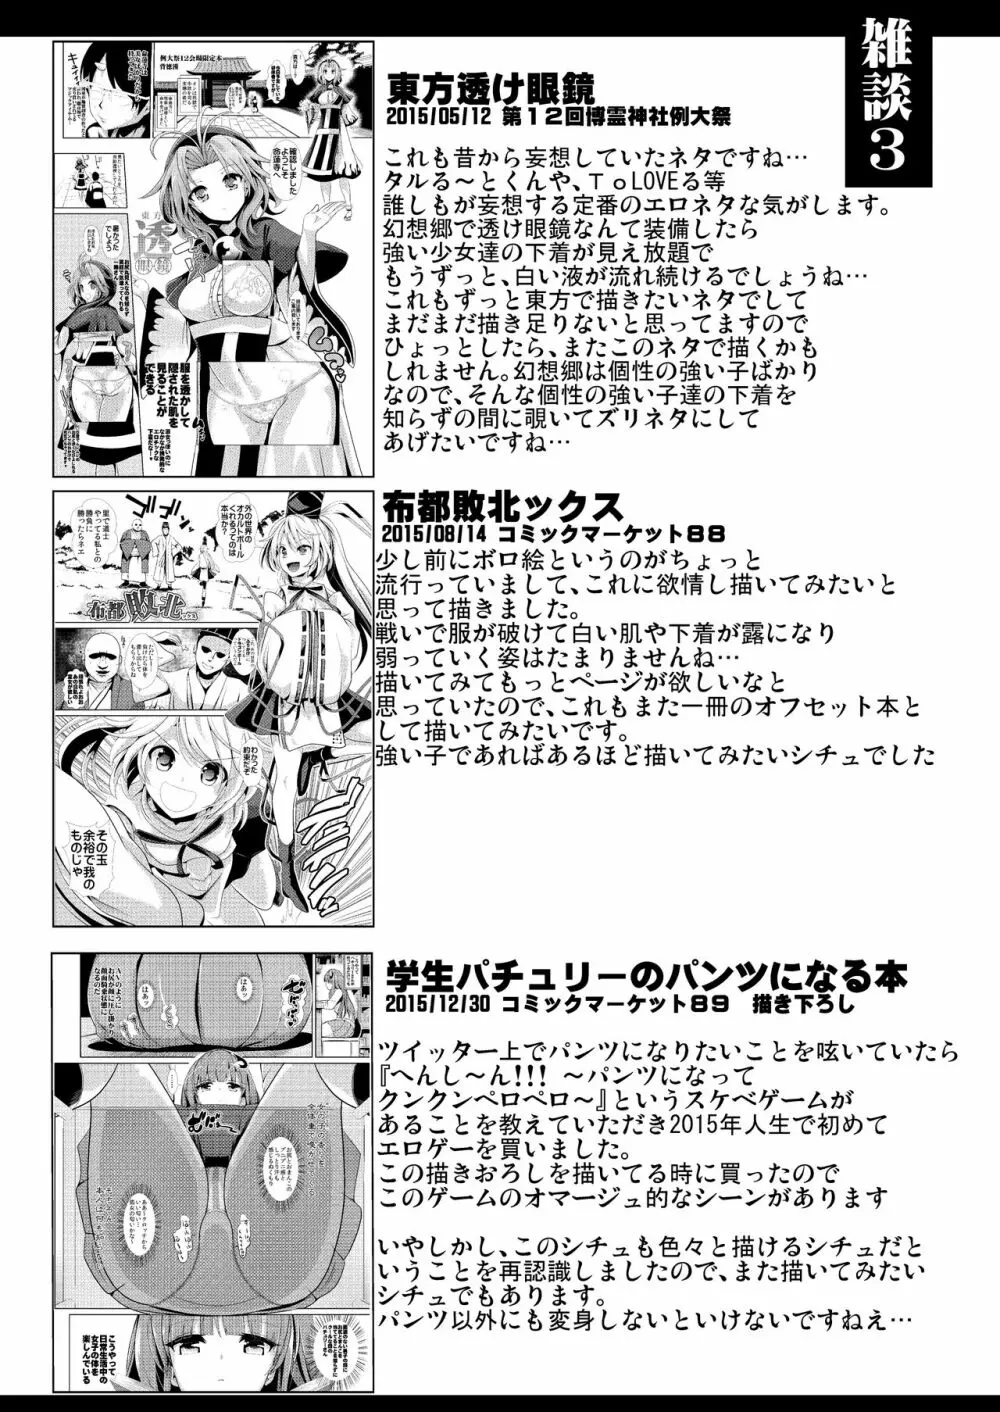 特殊シチュ短編総集編 東方シコるッ! 1 68ページ